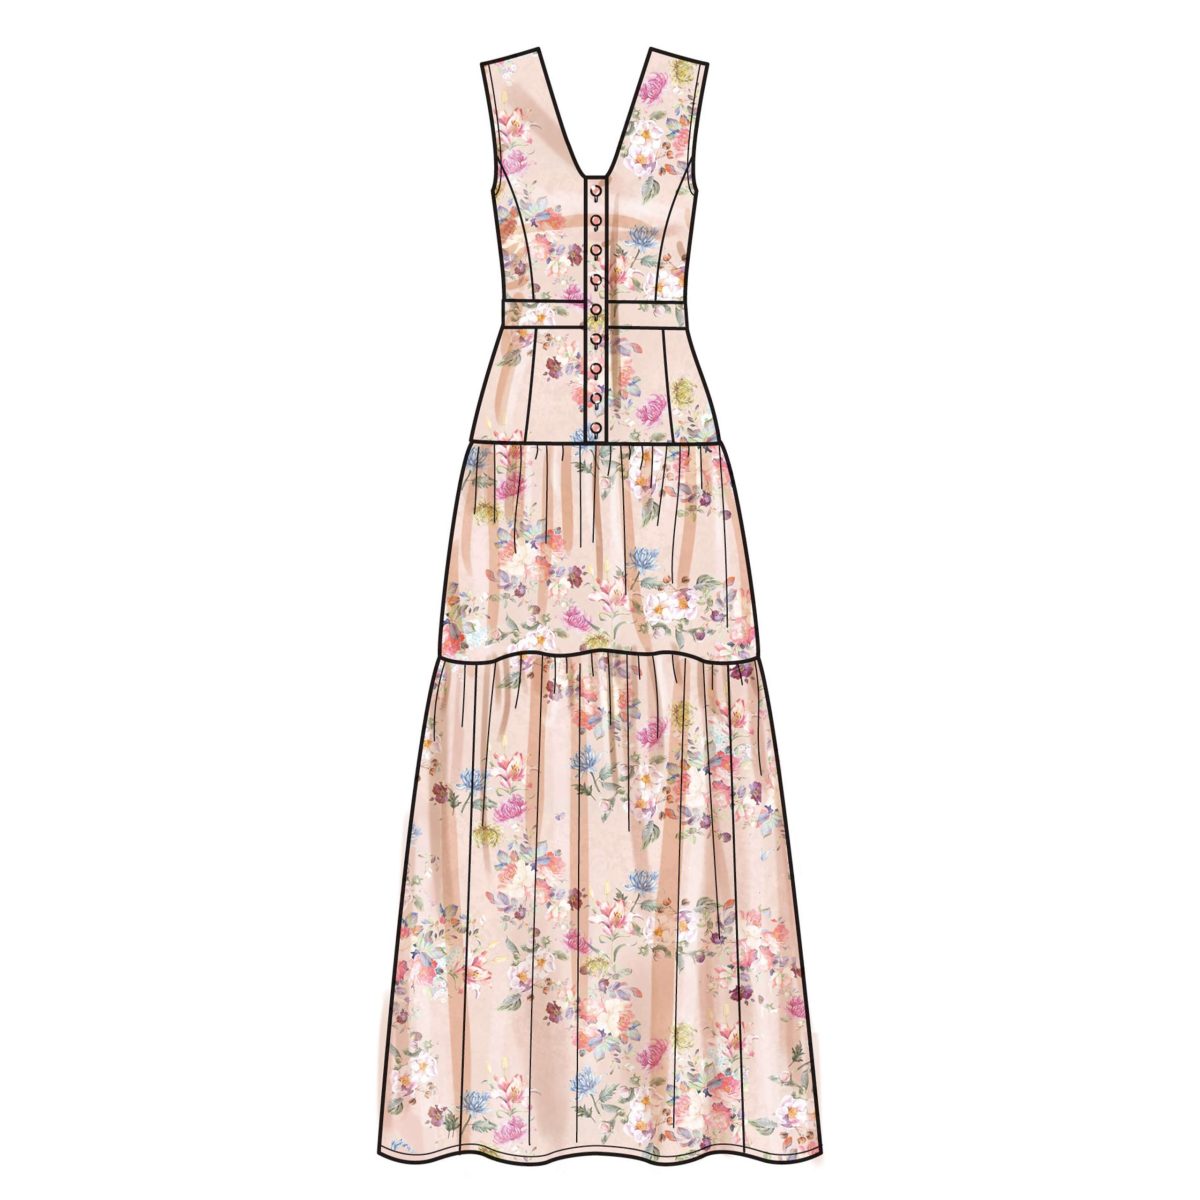 New Look Sewing Pattern N6718 Misses' Dress